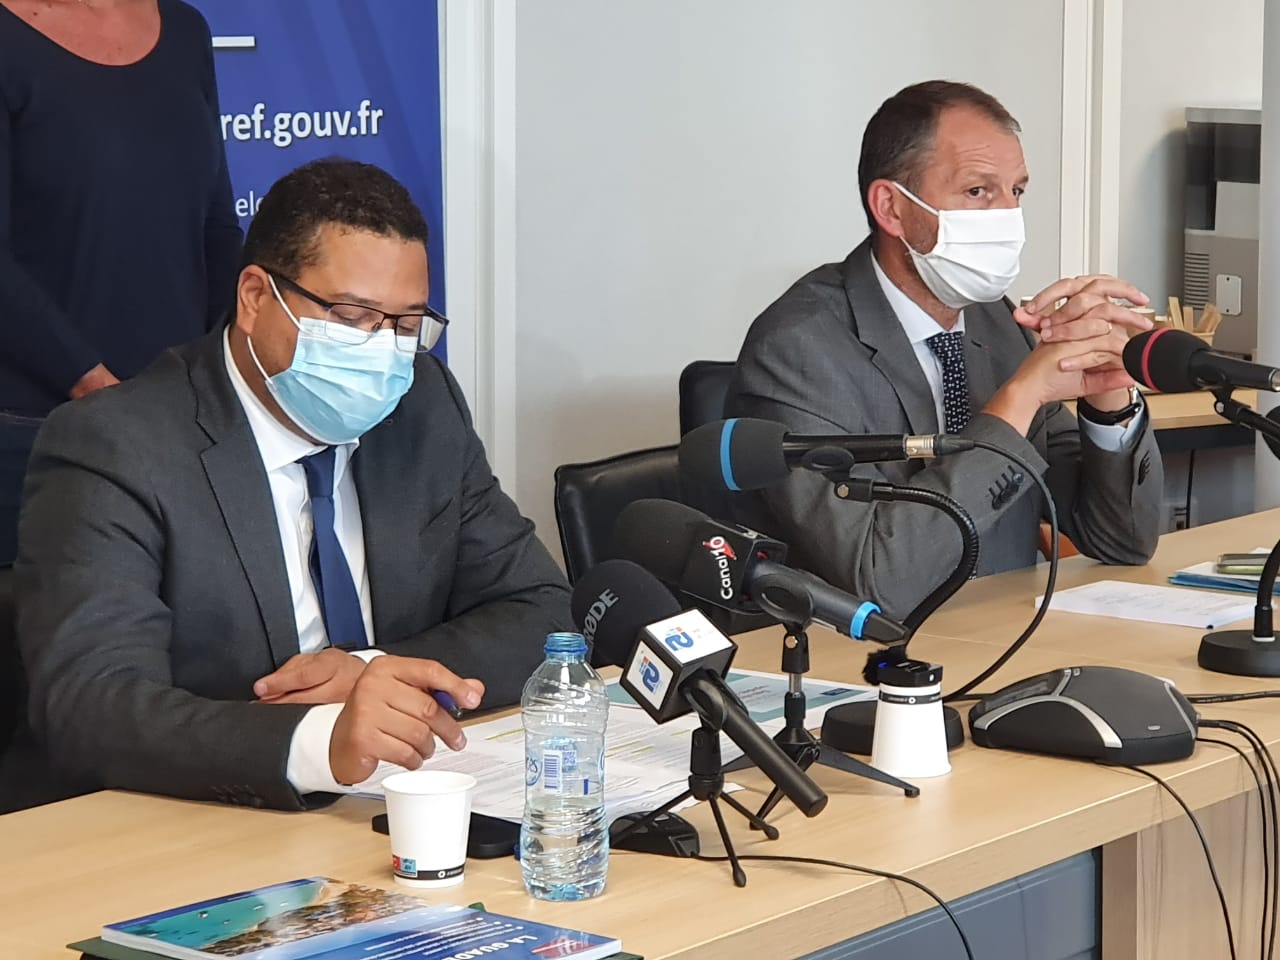     Covid-19 : la circulation du virus s'accélère en Guadeloupe

